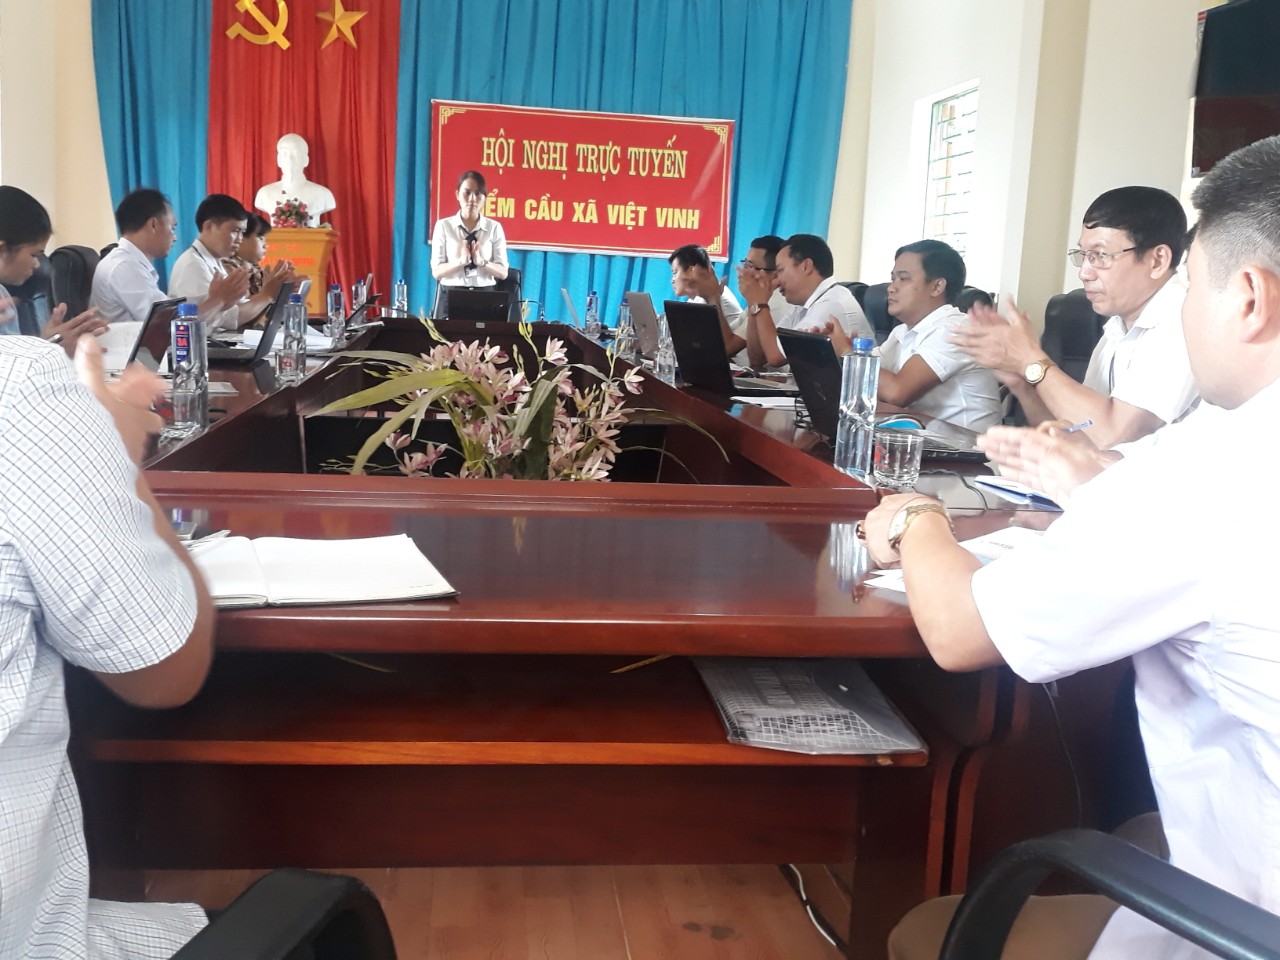 Hội đồng nghĩa vụ quân sự xã Việt Vinh tổ chức họp, triển khai kế hoạch khám sơ tuyển nghĩa vụ Quân sự, nghĩa vụ tham gia Công an nhân dân năm 2020.